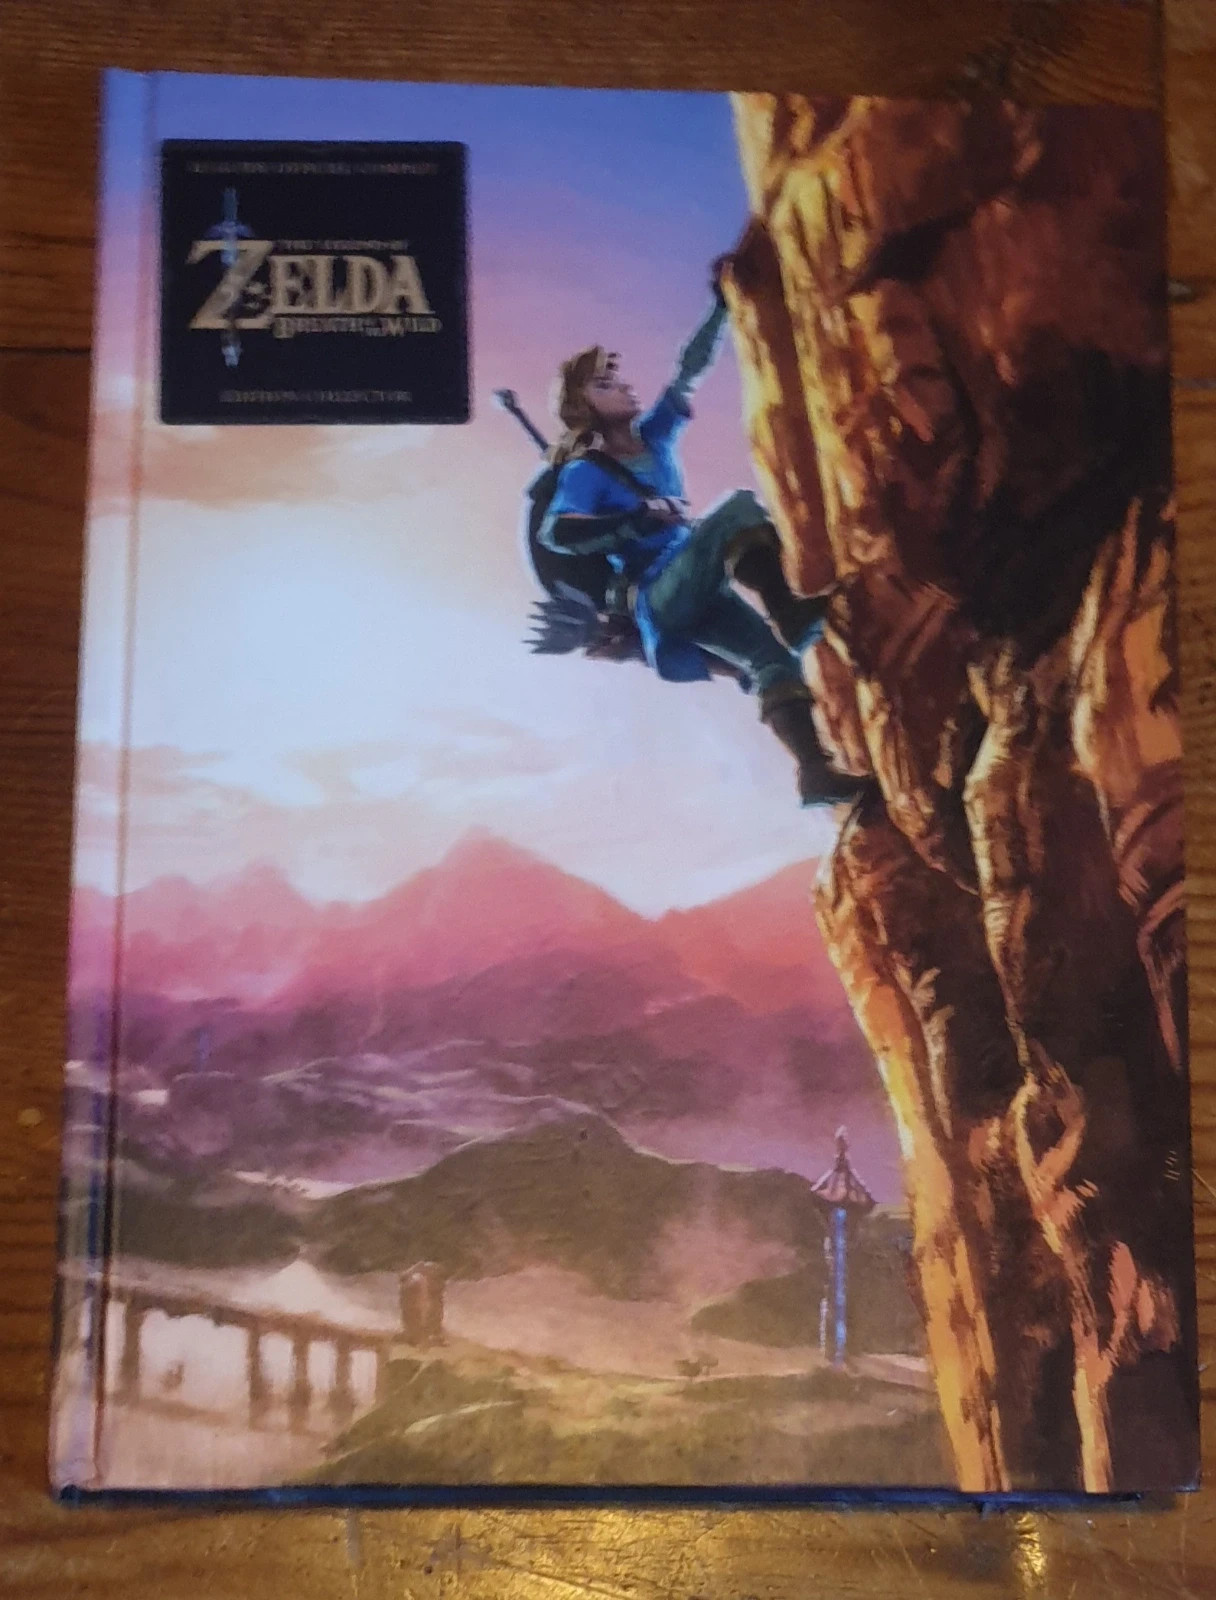 The Legend of Zelda: Breath of the Wild - Le guide officiel complet -  Édition augmentée - Version française